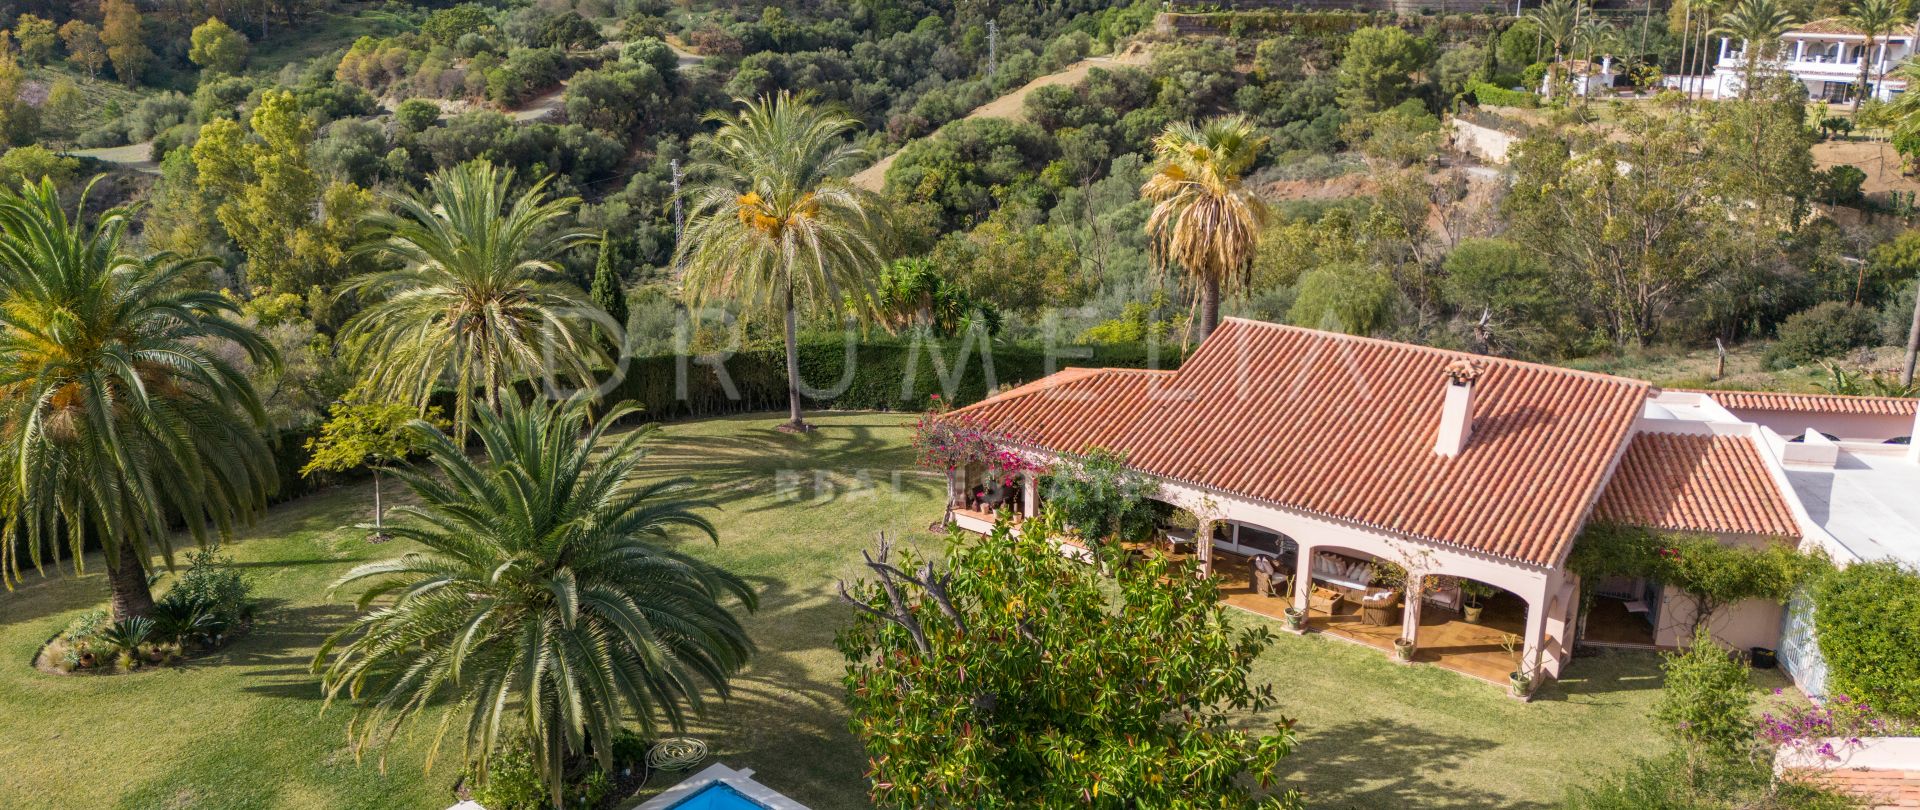 Villa pleine de charme andalou à vendre dans la belle Benahavis